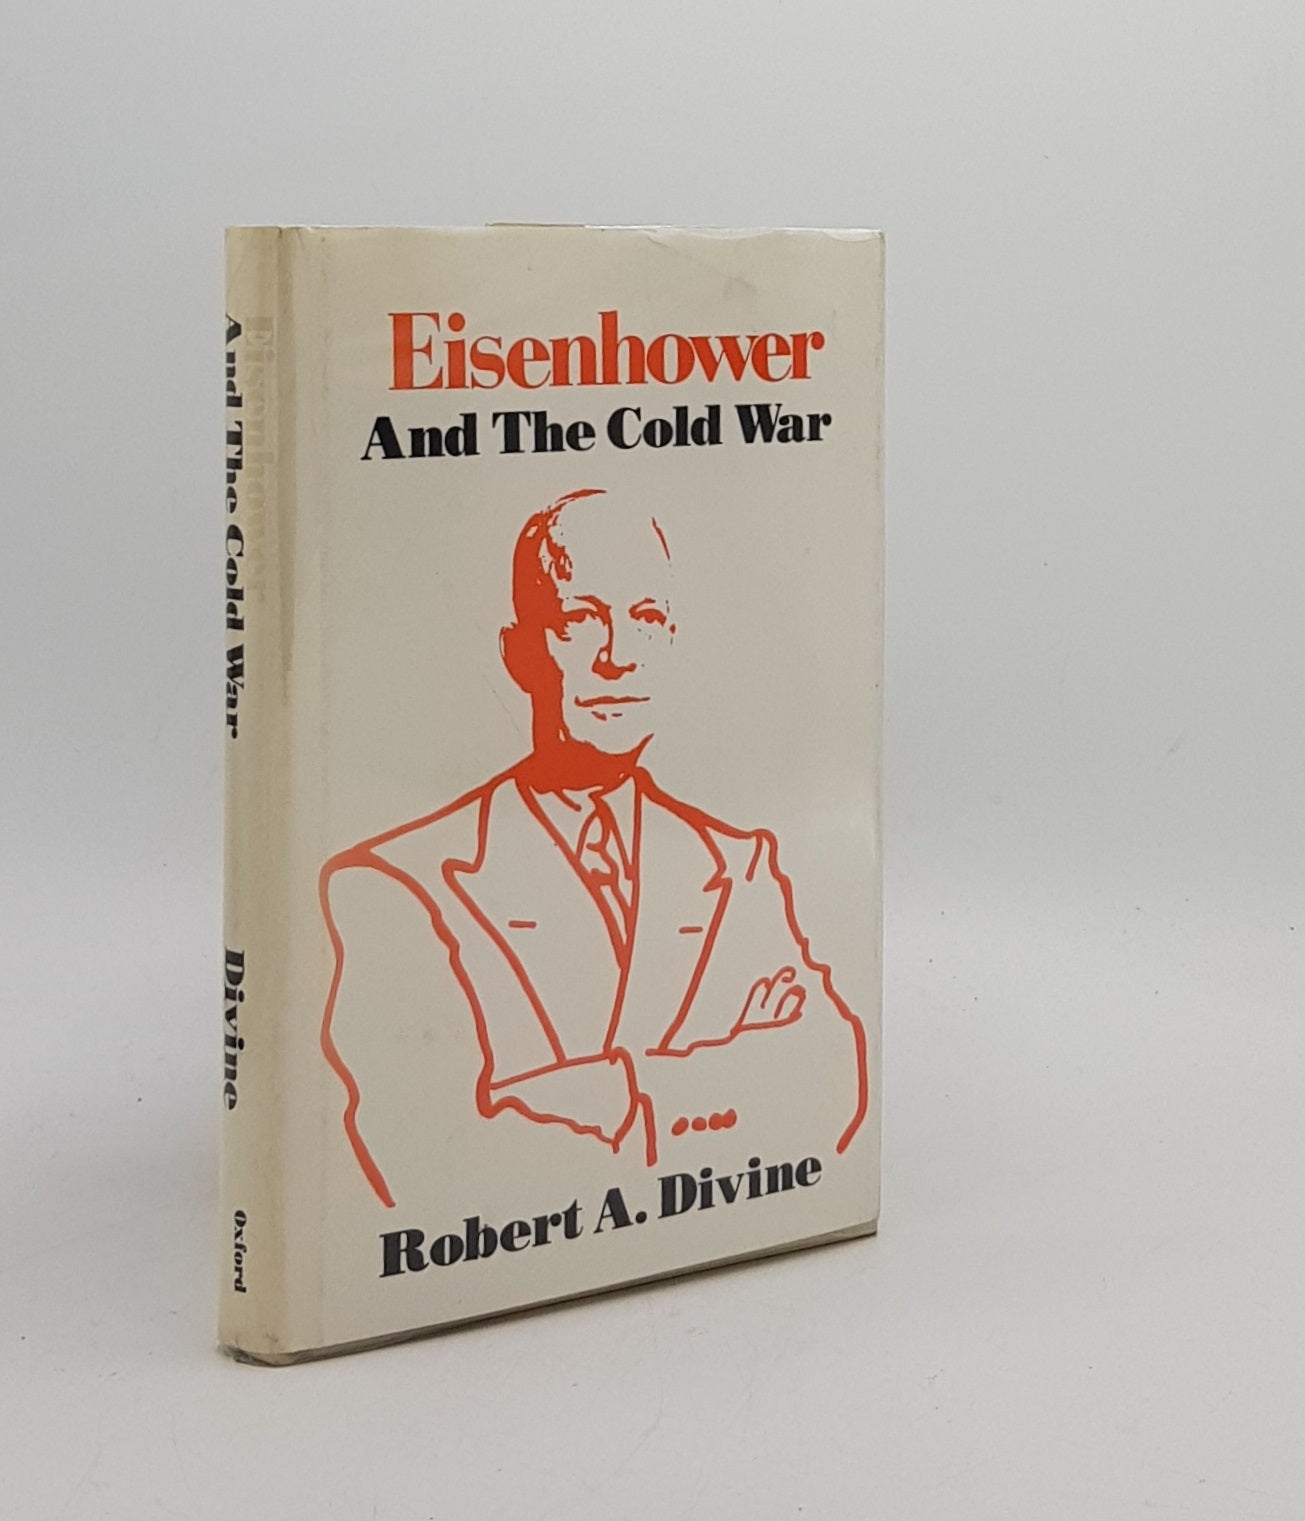 DIVINE Robert A. - Eisenhower and the Cold War